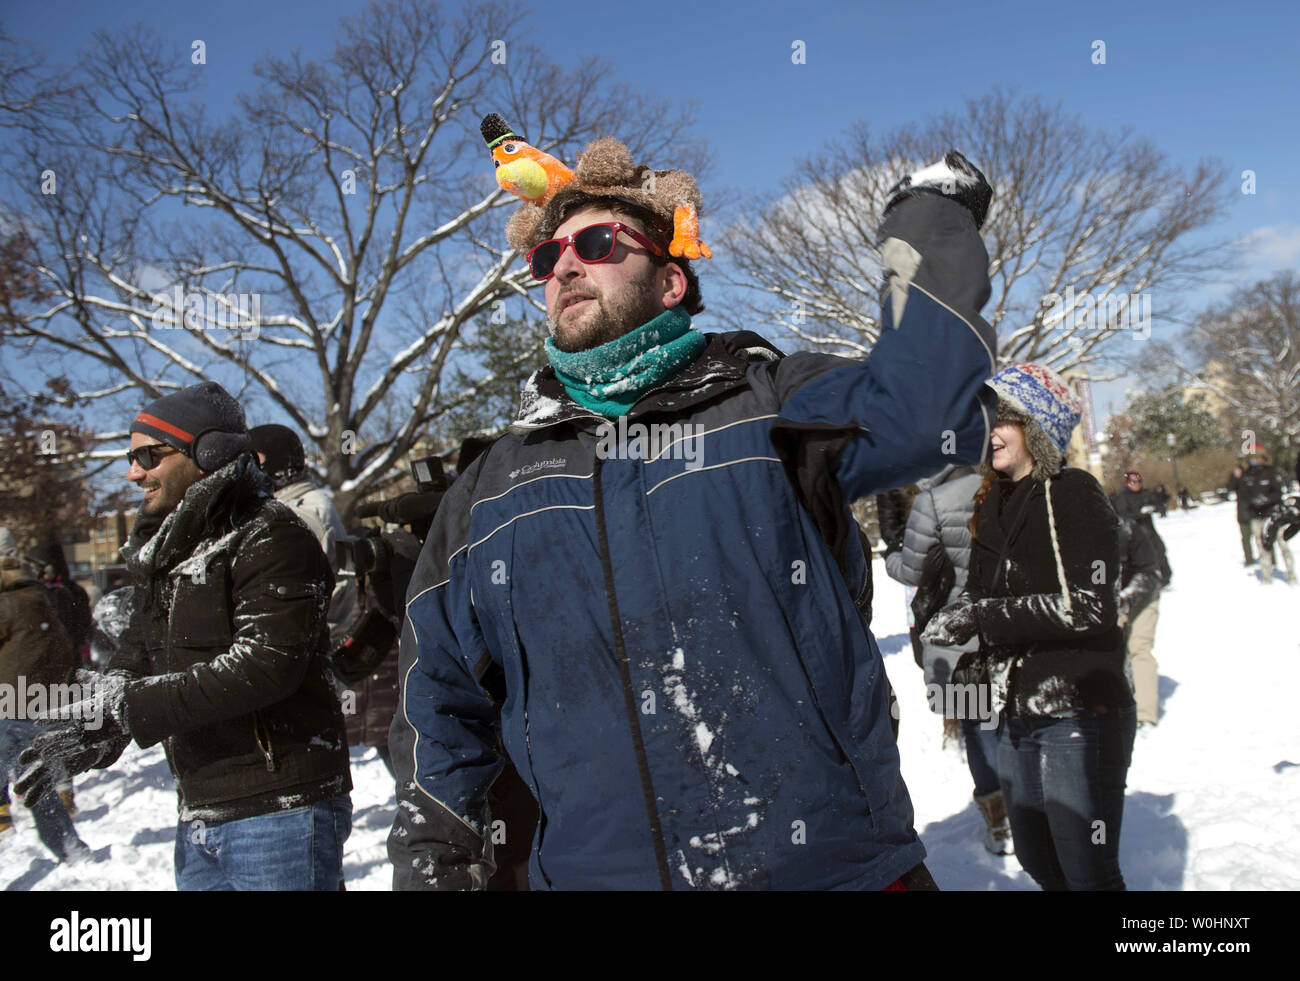 Ein Mann wirft einen Schneeball während einer Schneeballschlacht in Meridan Hill Park in Washington, D.C., 17. Februar 2015. Der Präsident Tag Schnee Sturm gesunken 3-6 Zoll Schnee über das D.C. Region. Foto von Kevin Dietsch/UPI Stockfoto